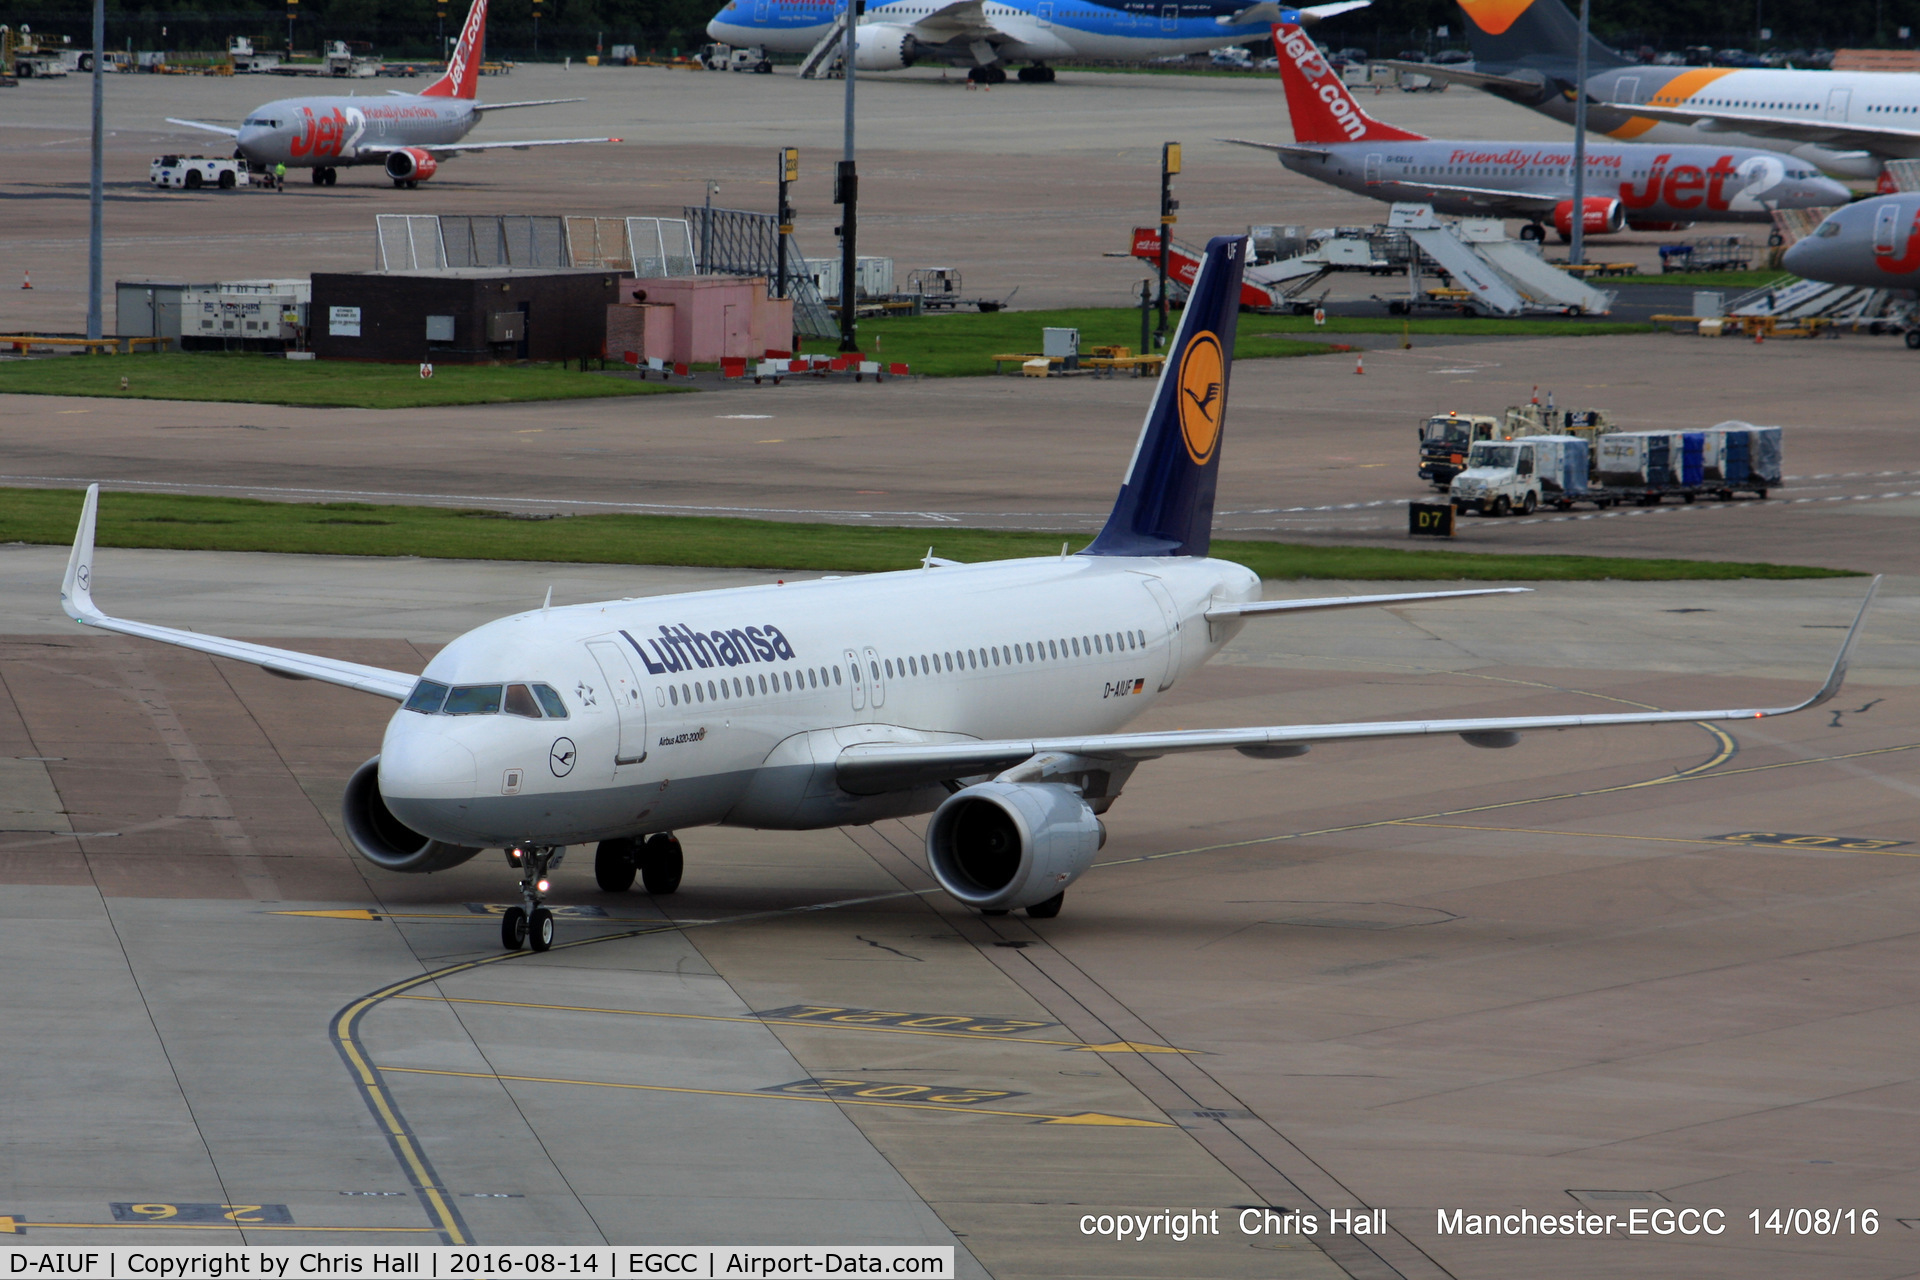 D-AIUF, 2014 Airbus A320-214 C/N 6141, Lufthansa